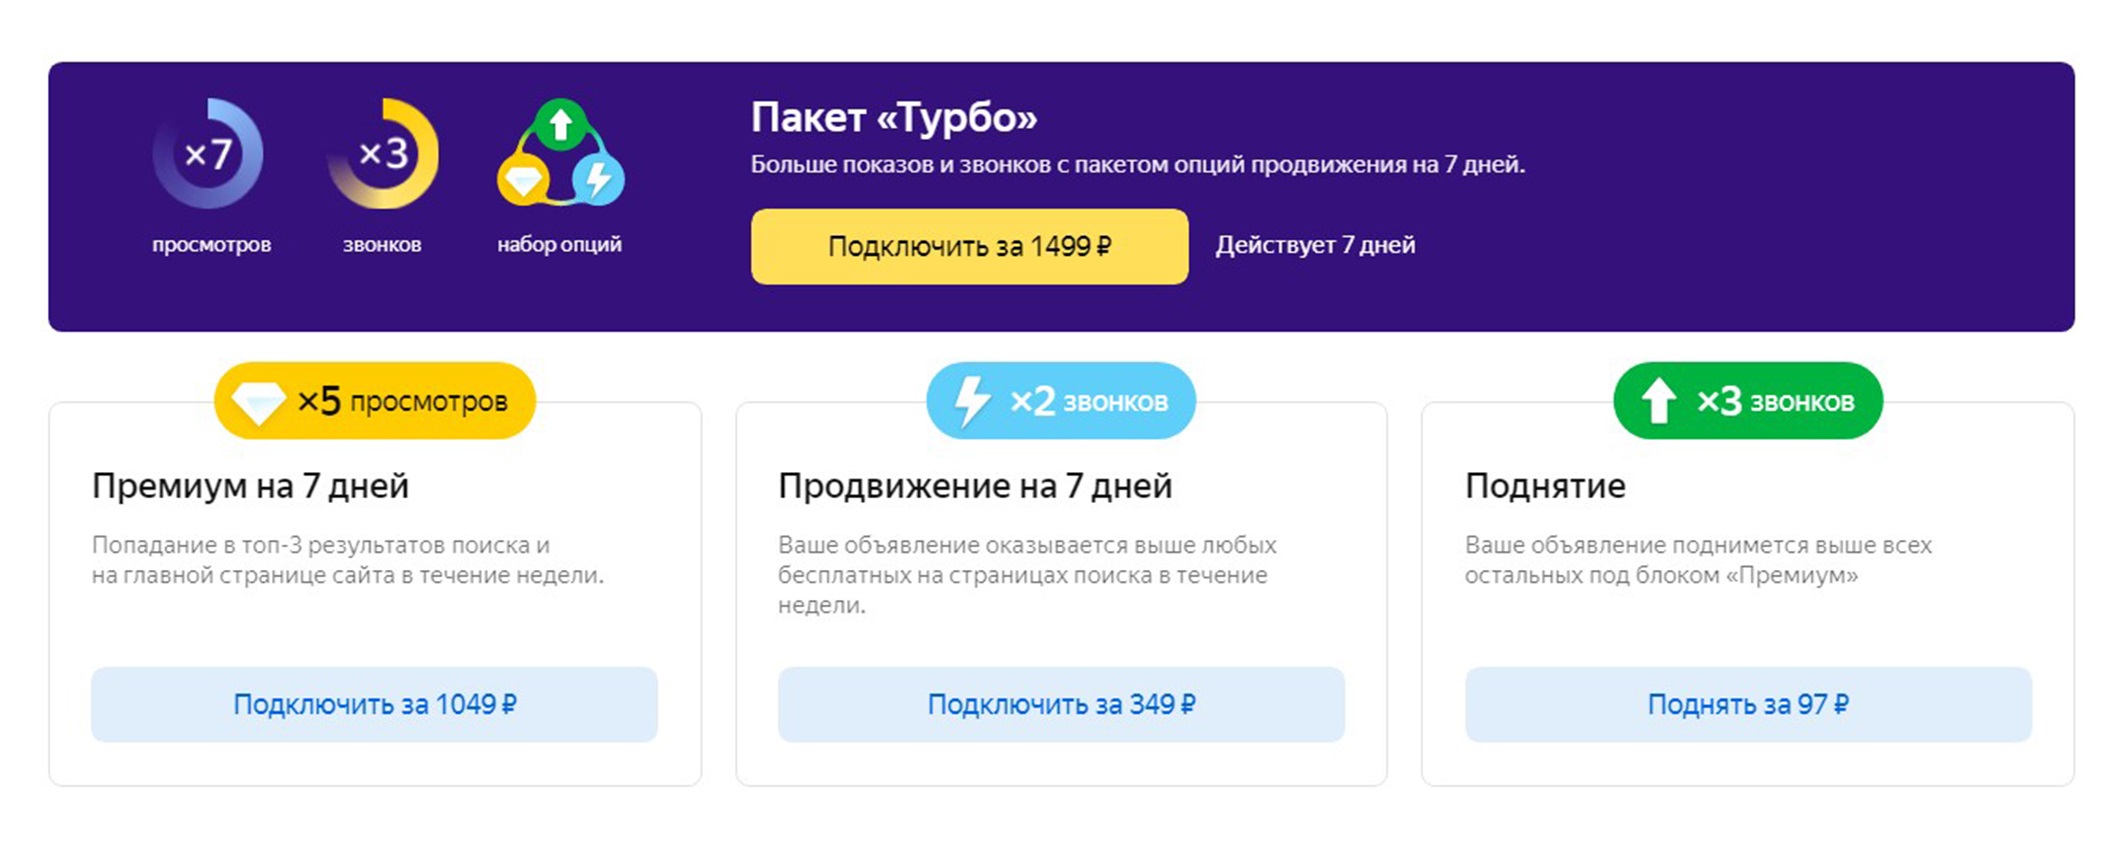 Пакеты размещения на портале «Яндекс-недвижимость». Площадка приносила мало звонков, поэтому я использовала разовые поднятия объявления. Источник: «Яндекс-недвижимость»